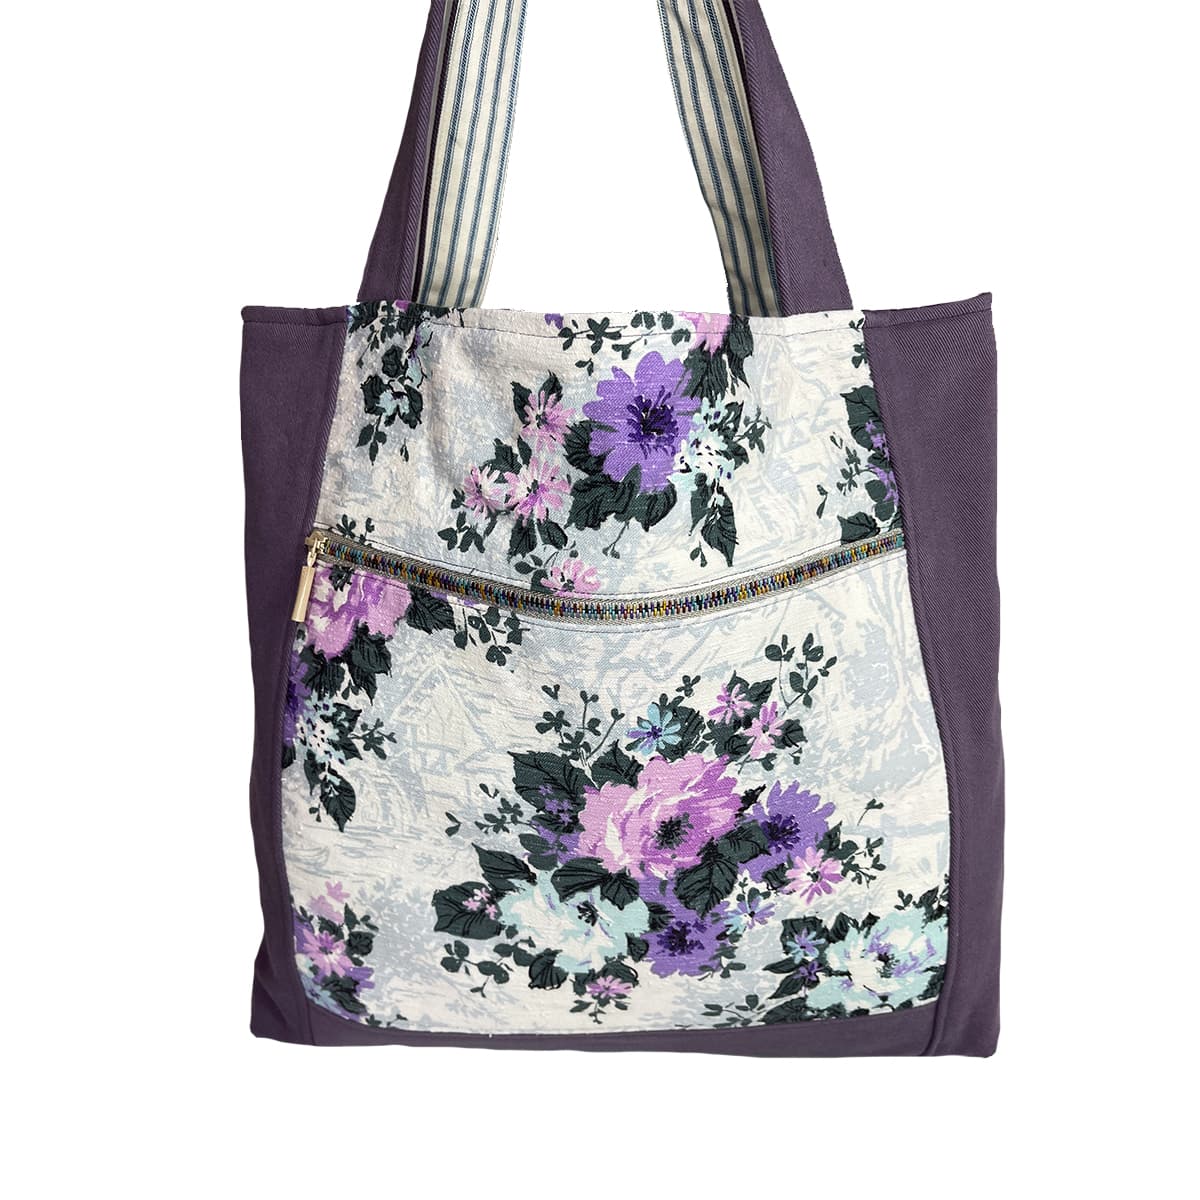 Up Island Bag - Wildflowers In Purple - SylvieBags